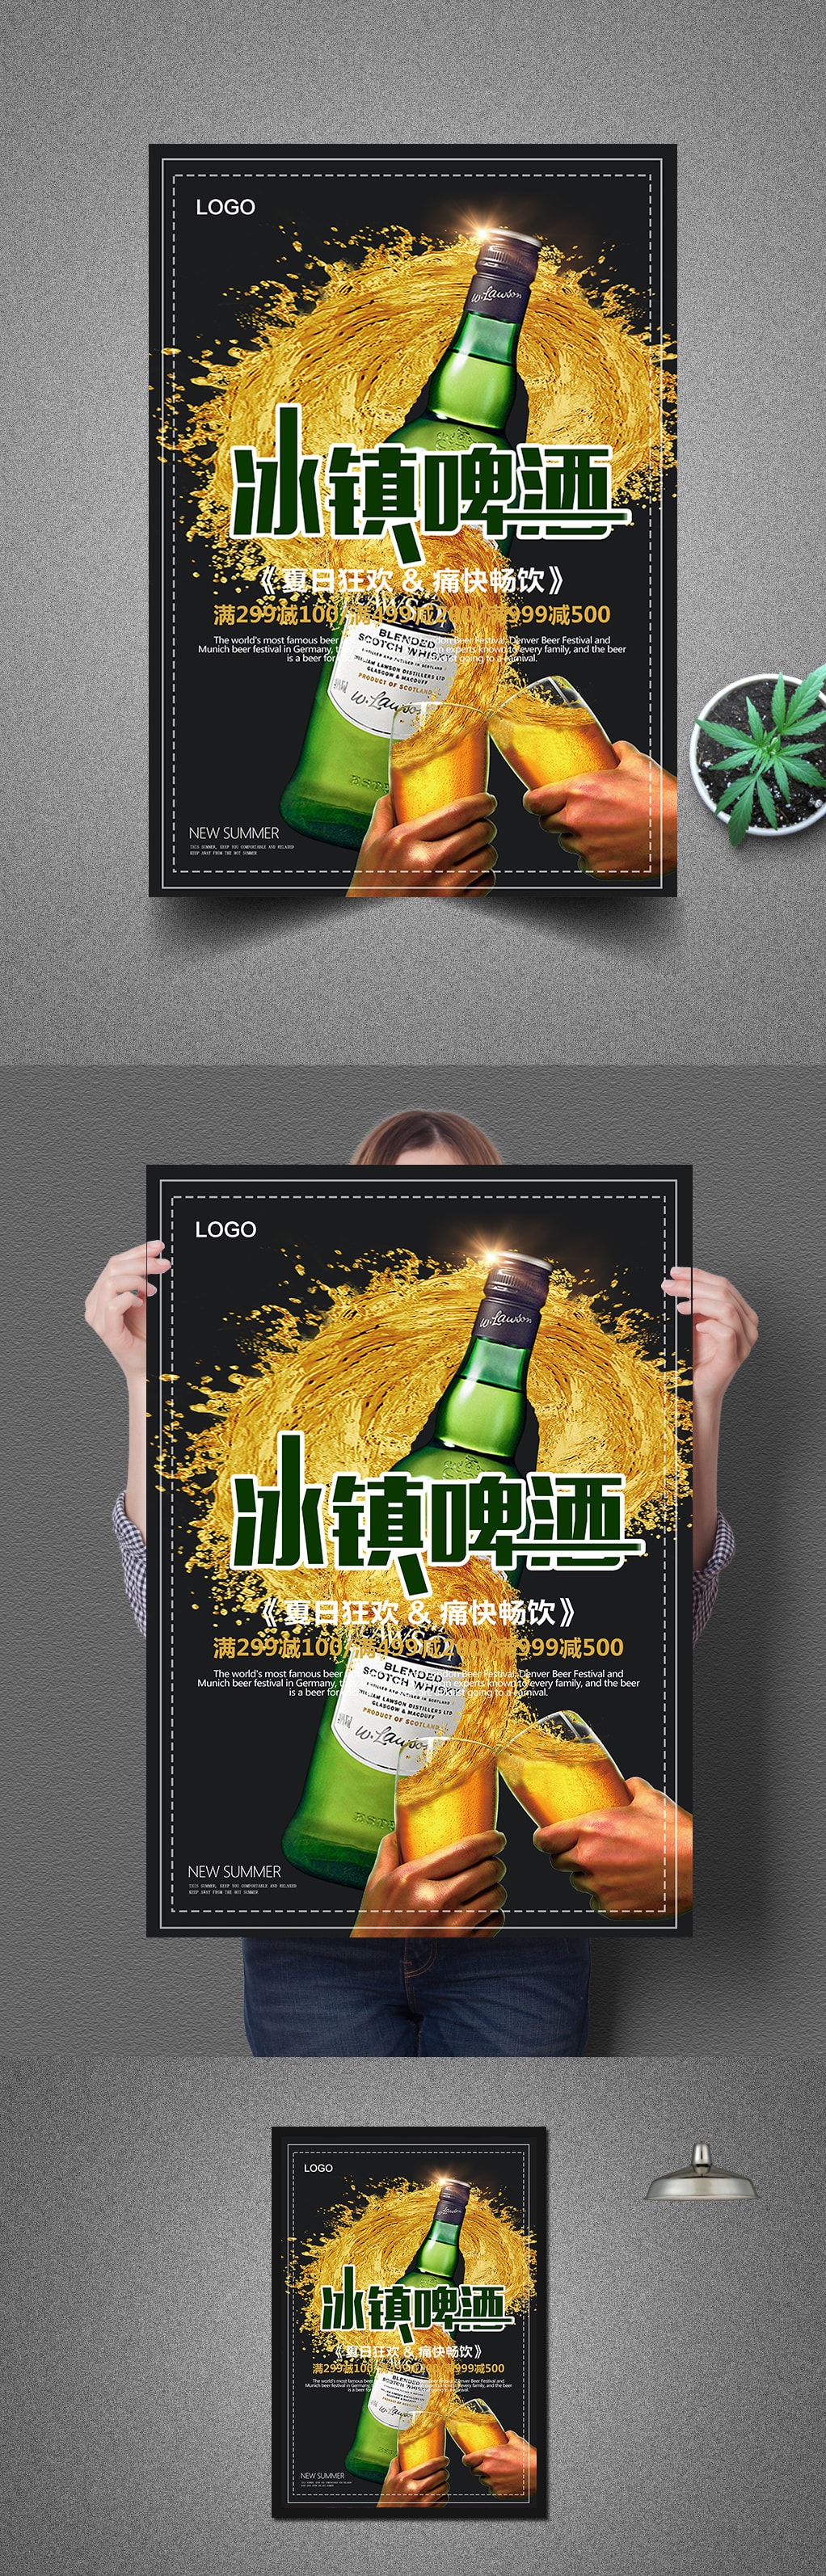 啤酒节冰镇啤酒海报